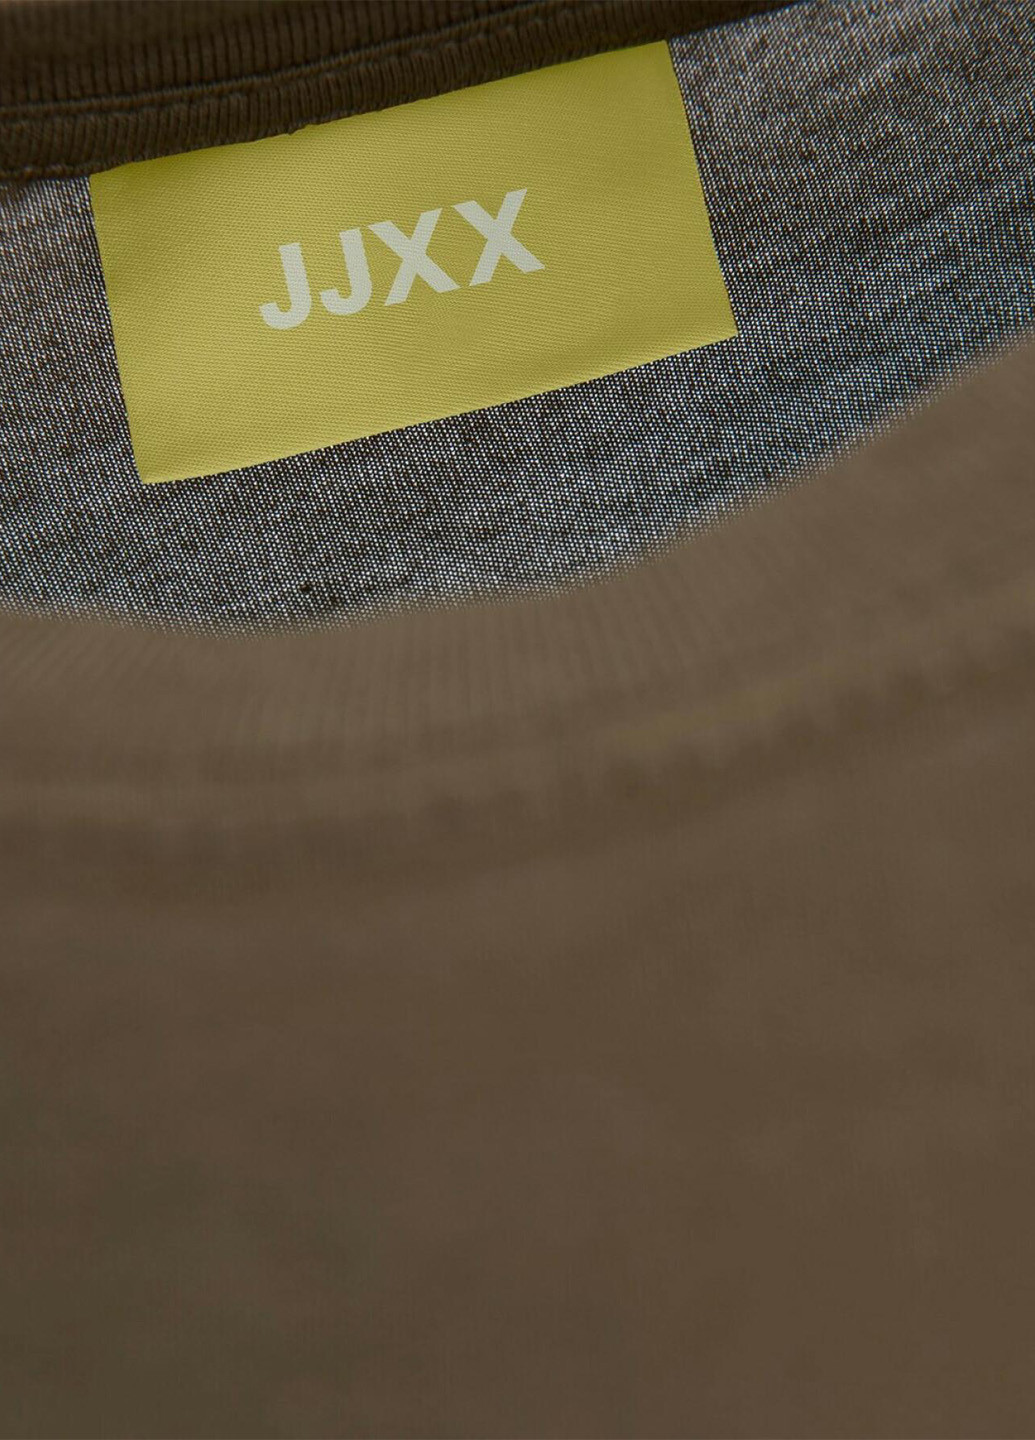 Хаки (оливковая) летняя футболка JJXX